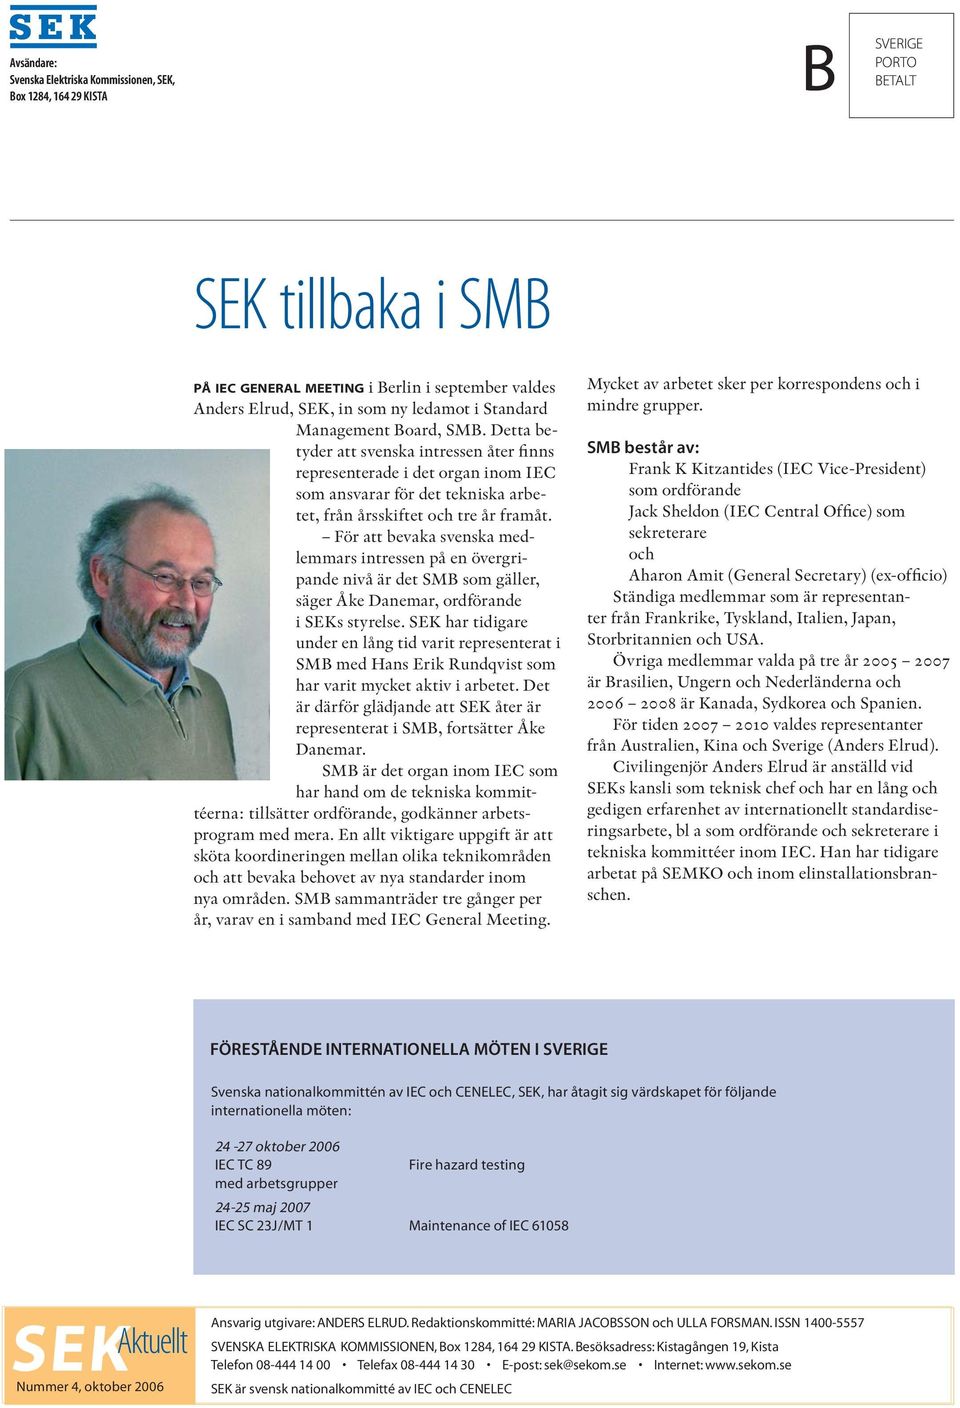 För att bevaka svenska medlemmars intressen på en övergripande nivå är det SMB som gäller, säger Åke Danemar, ordförande i SEKs styrelse.